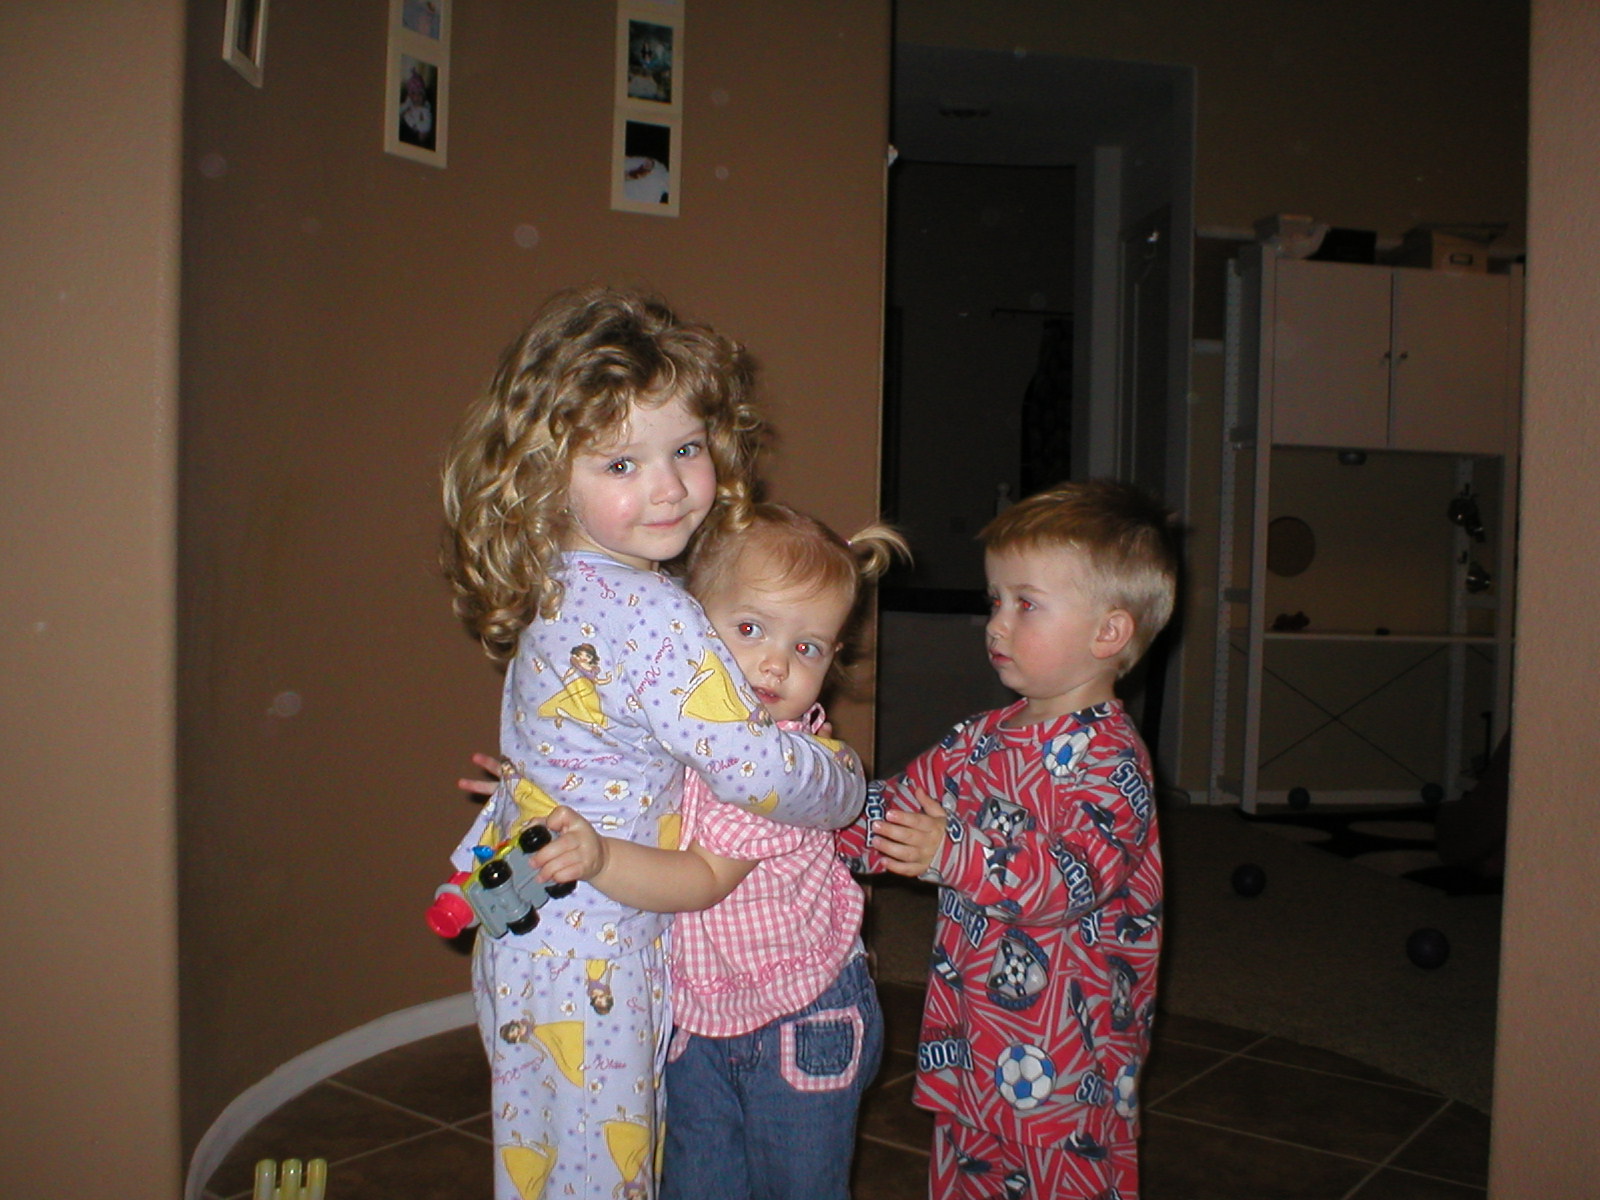 Kaylin with her friends Sydni & Davis (Miles & Salyna's kids)